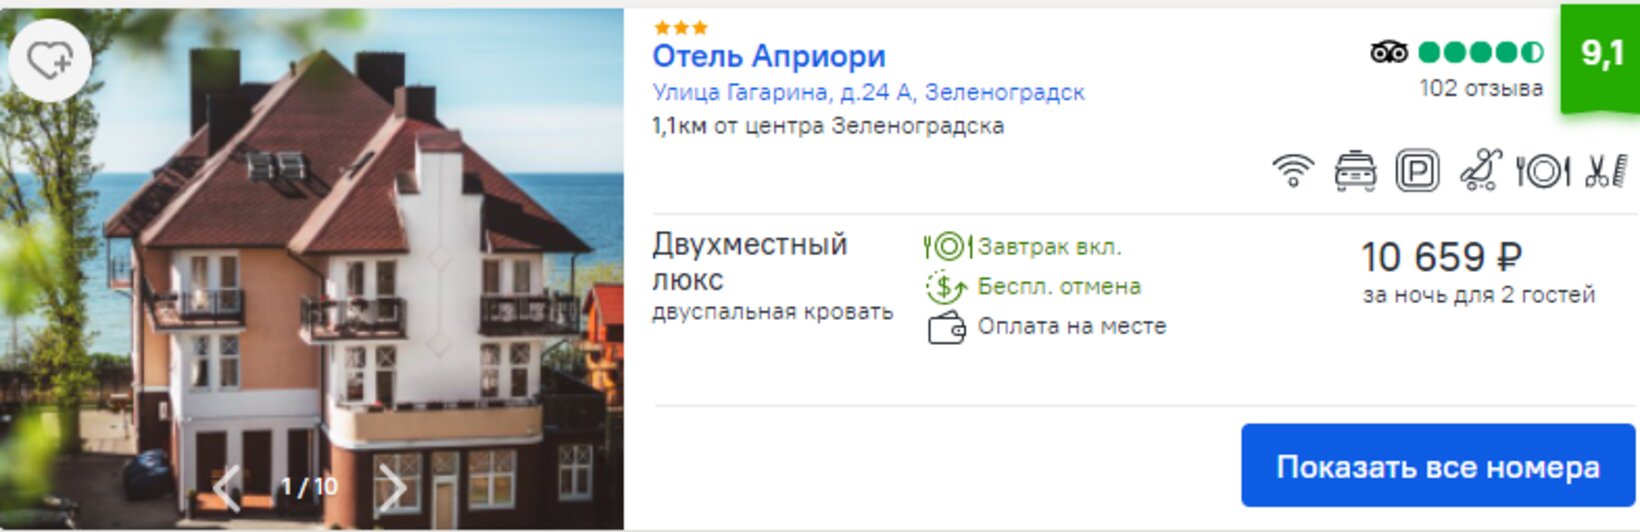 стоимость отелей в Зеленоградске | скриншоты с сервиса ostrovok.ru